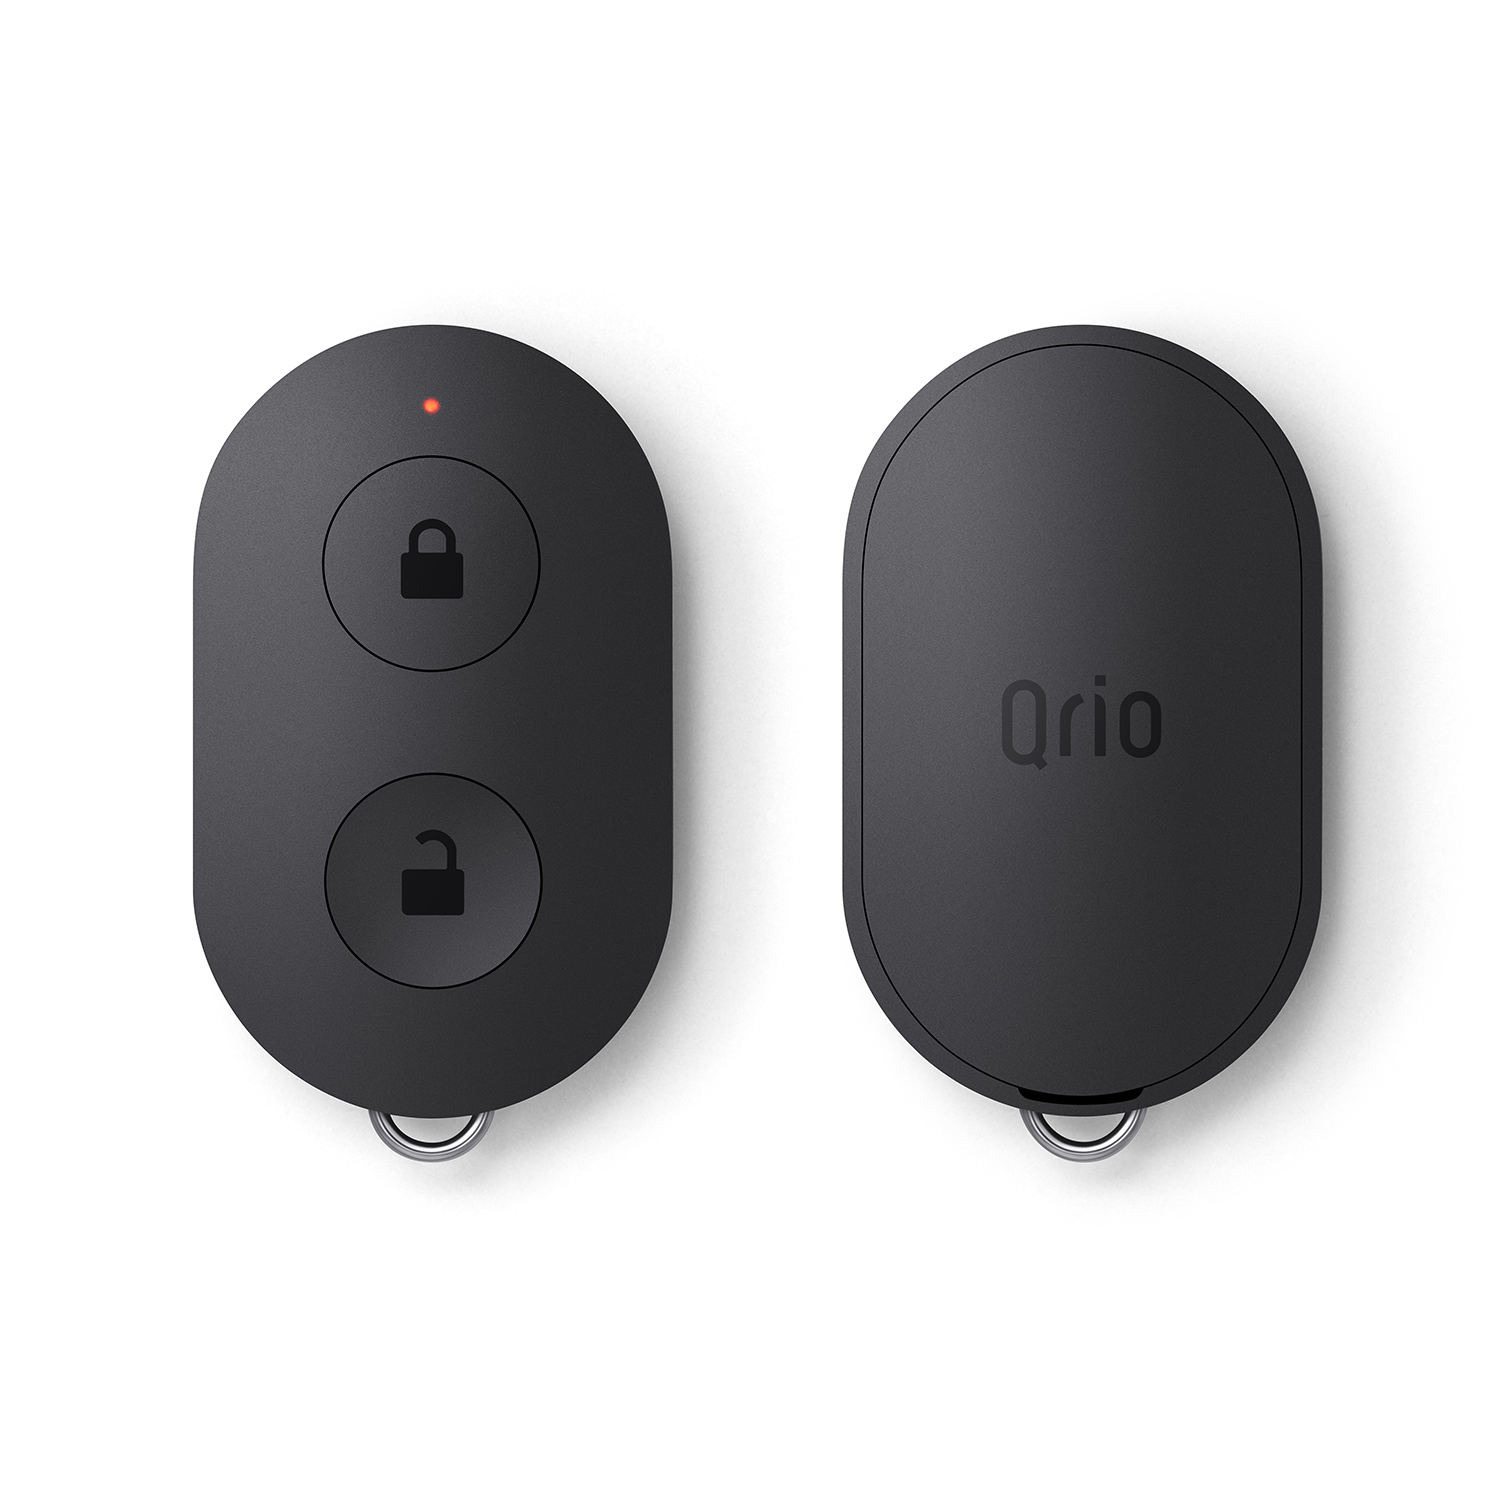 Qrio Key (キュリオキー) | Qrio製品情報・Qrio Store | Qrio（キュリオ）